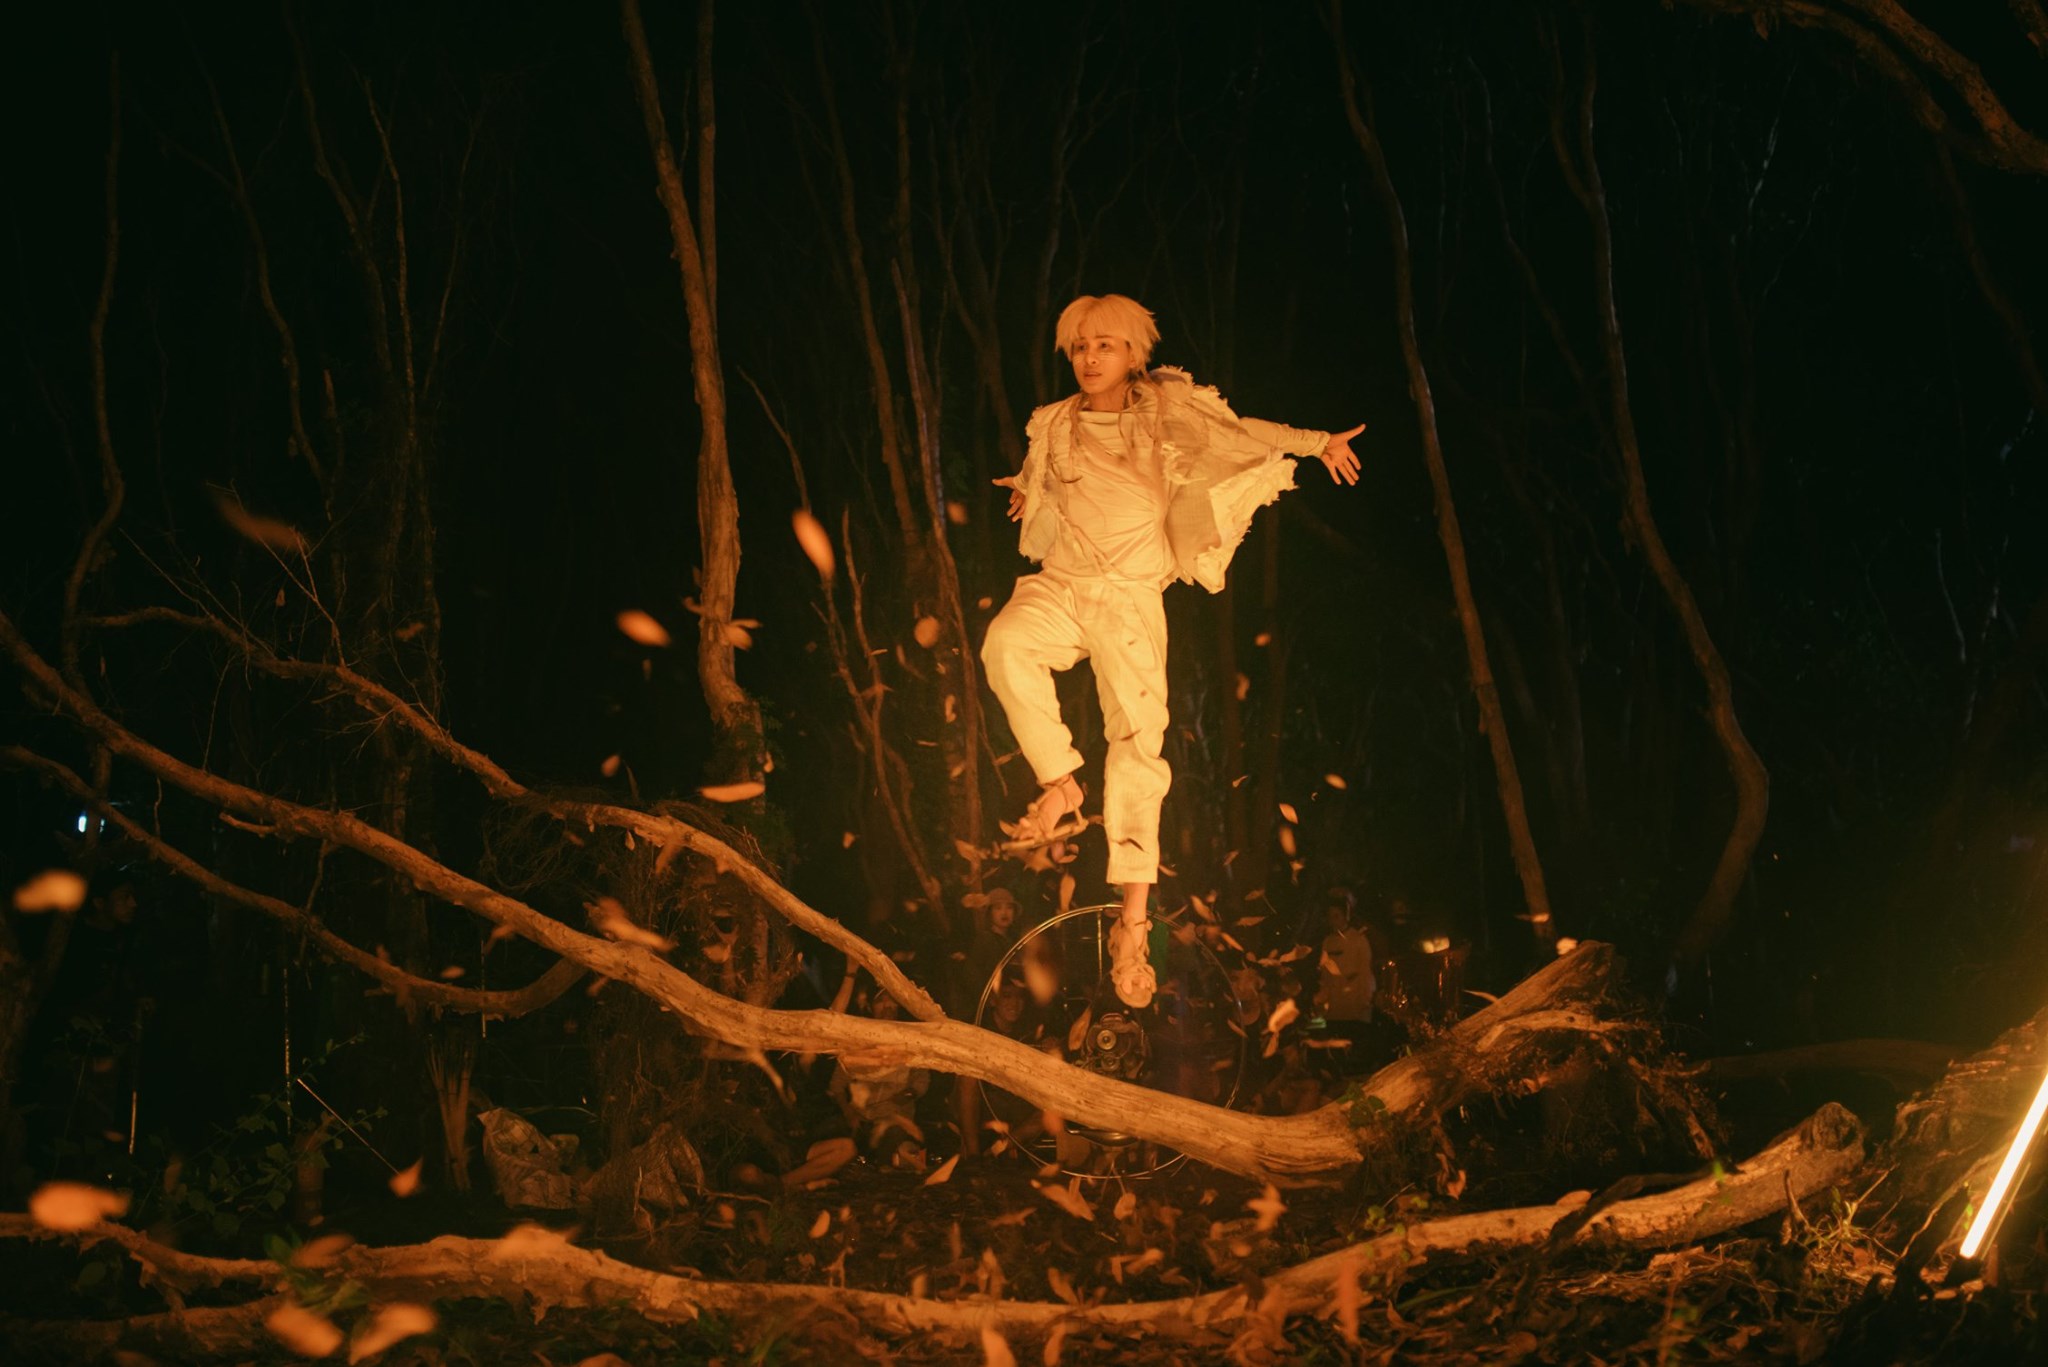 MV mới của Jack được quay trên nền rừng bị cháy của một ê-kíp bất cẩn trước đó để lại - ảnh 2